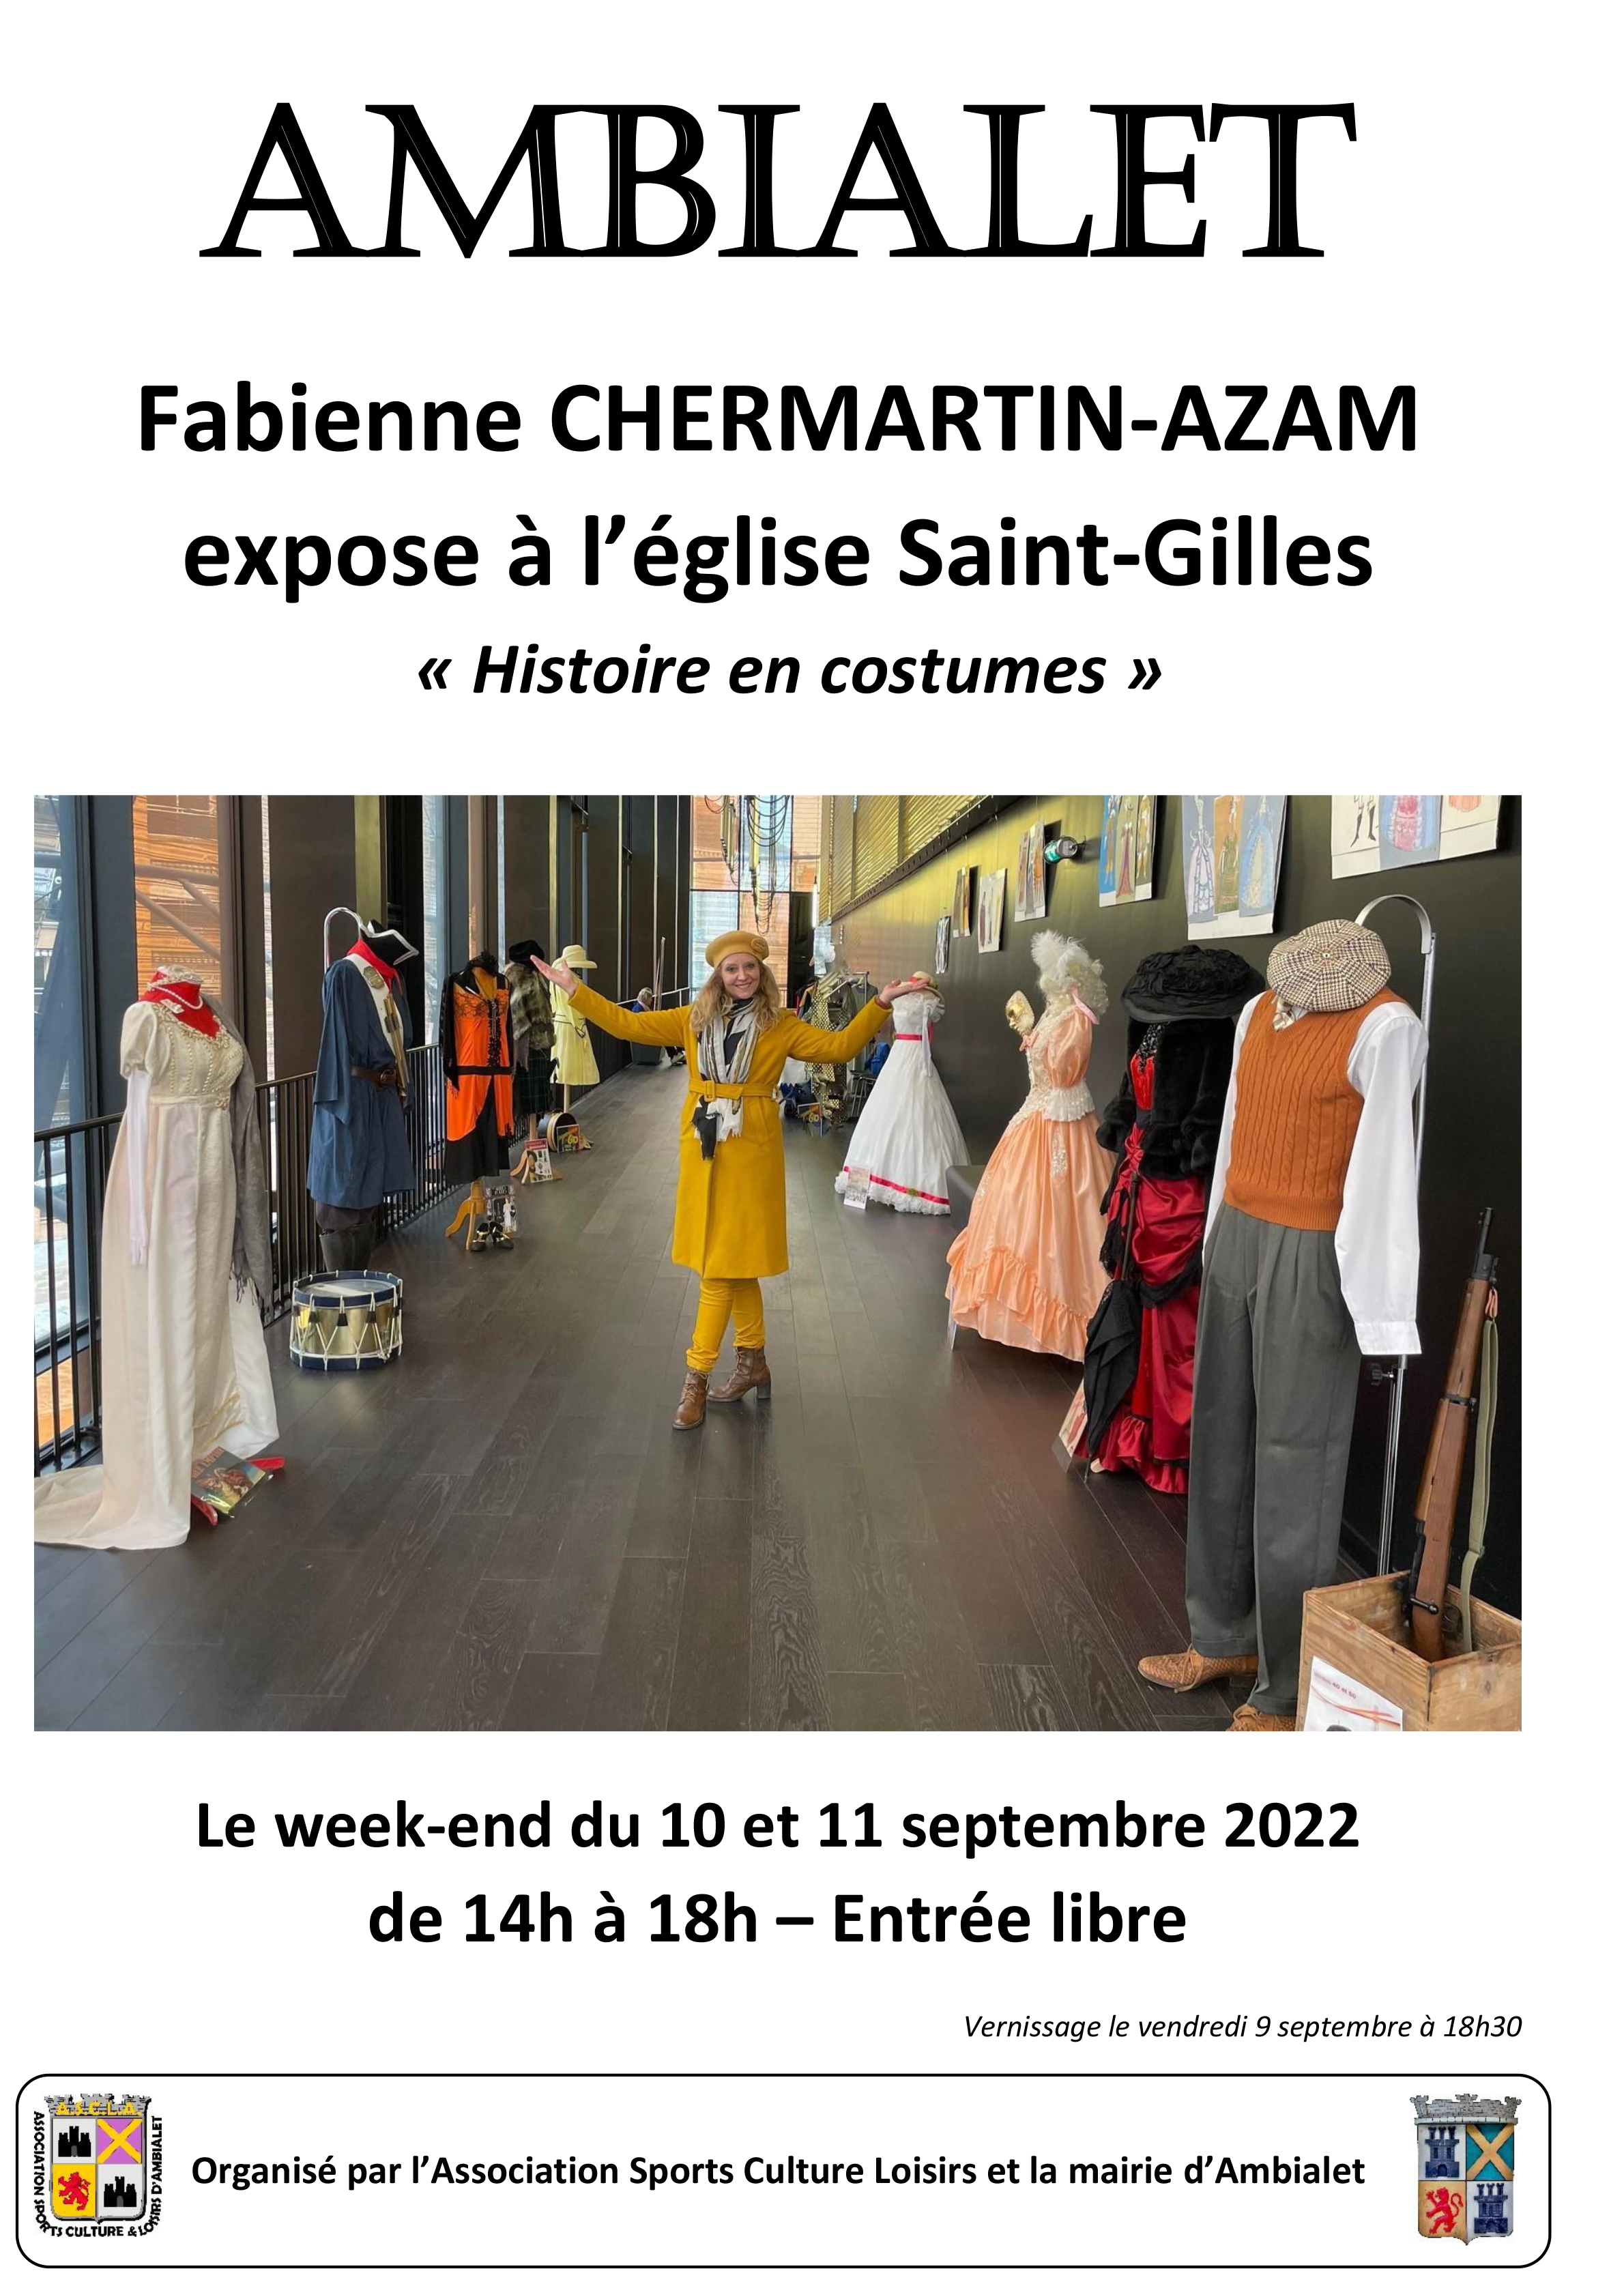 Exposition de Fabienne Chermartin-Azam à Ambialet